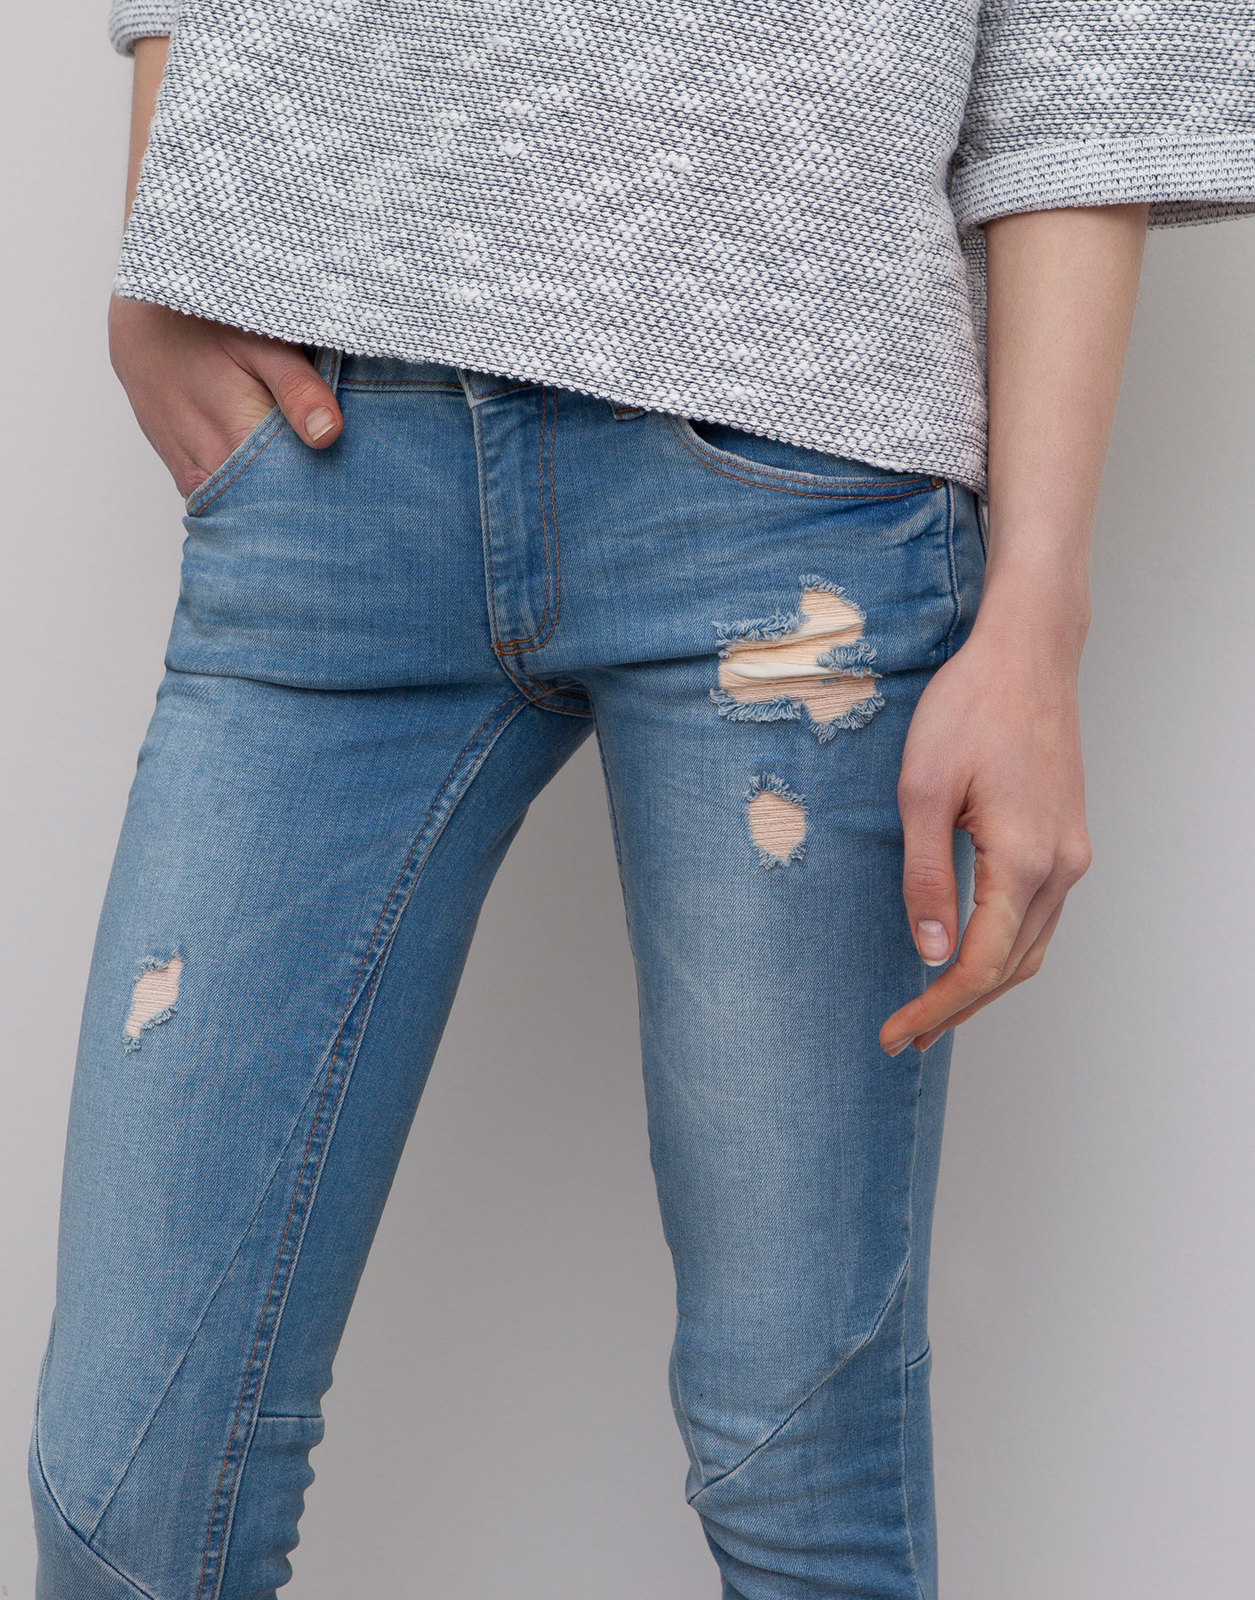 Pull and Bear szakadt világoskék skinny jeans 2015 fotója